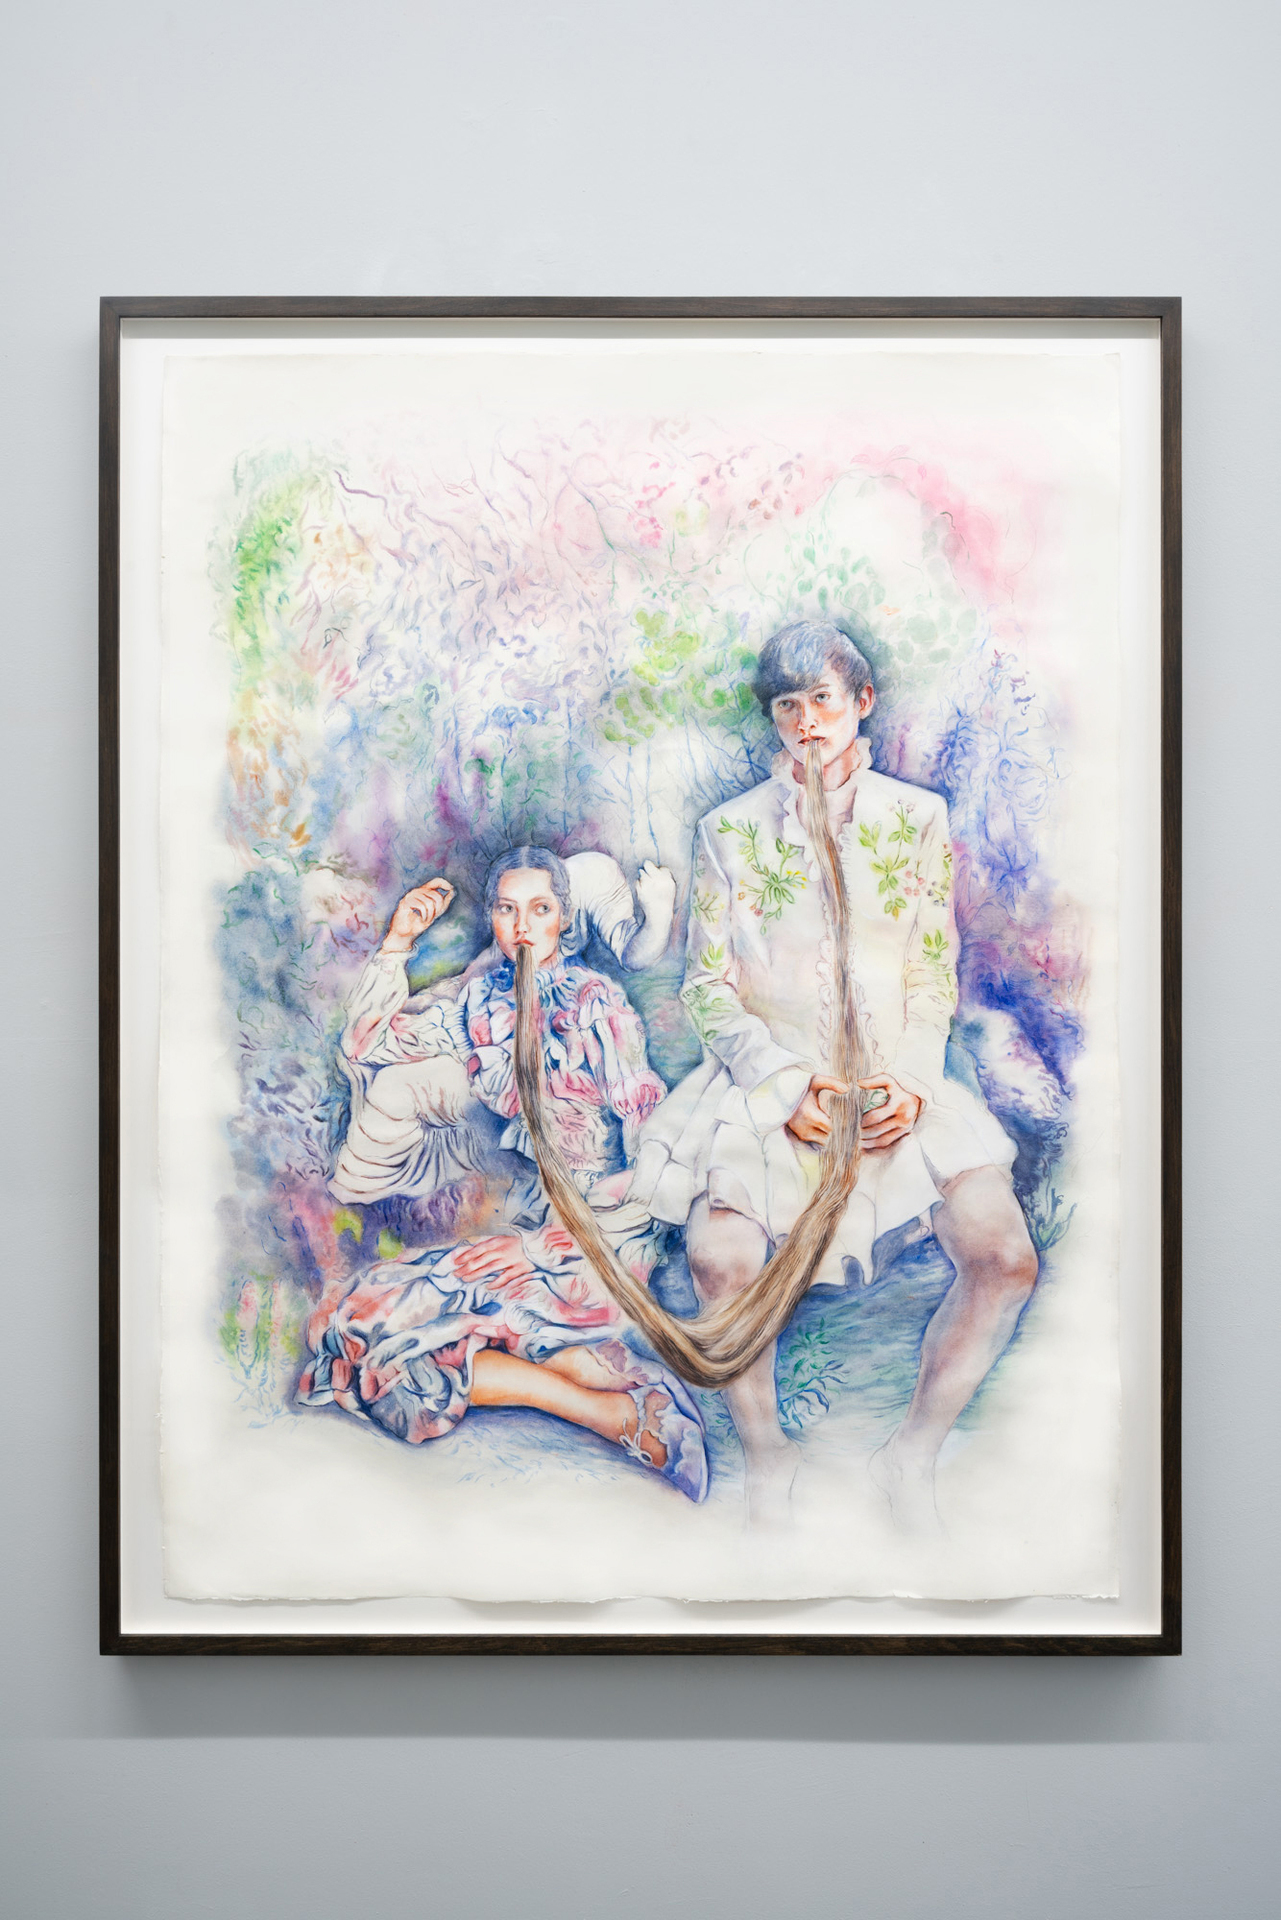 MARIANNA IGNATAKI, Unicorn dinner, 2021 Watercolor, gouache, color pigments, graphite and colored pencils on paper 140x110cm